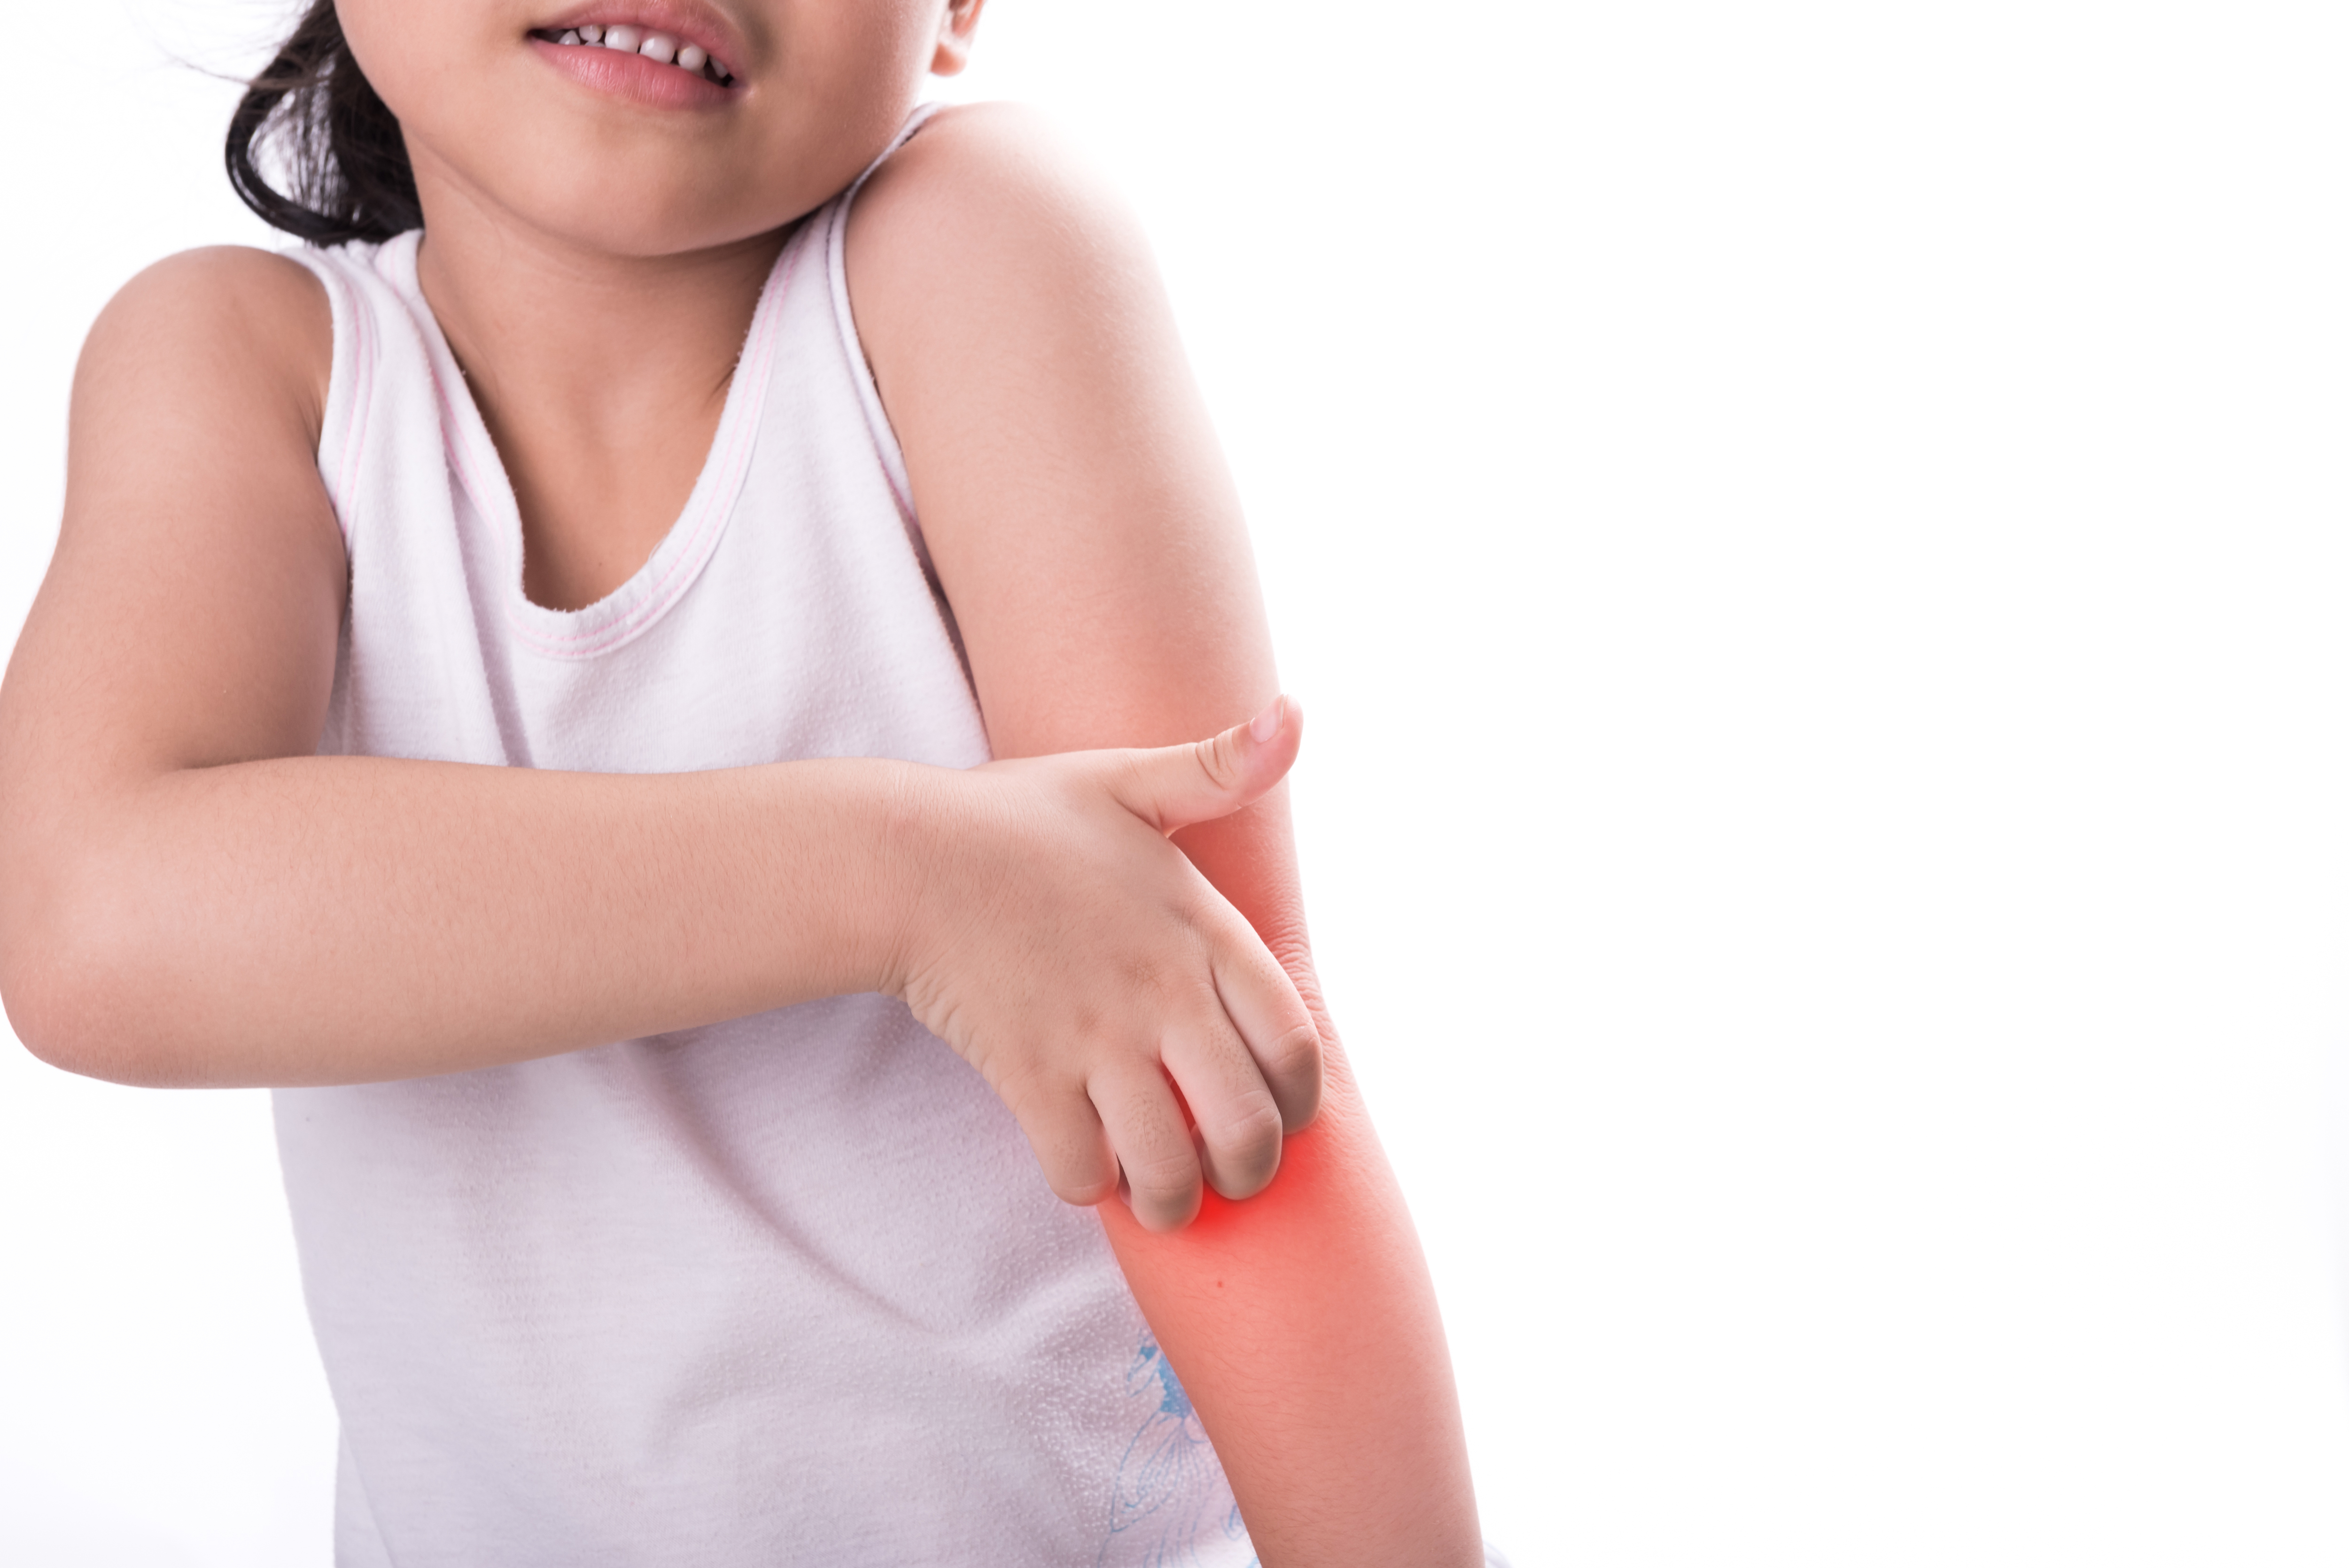 Ein Kind, das sich die Arme kratzt | Quelle: Shutterstock